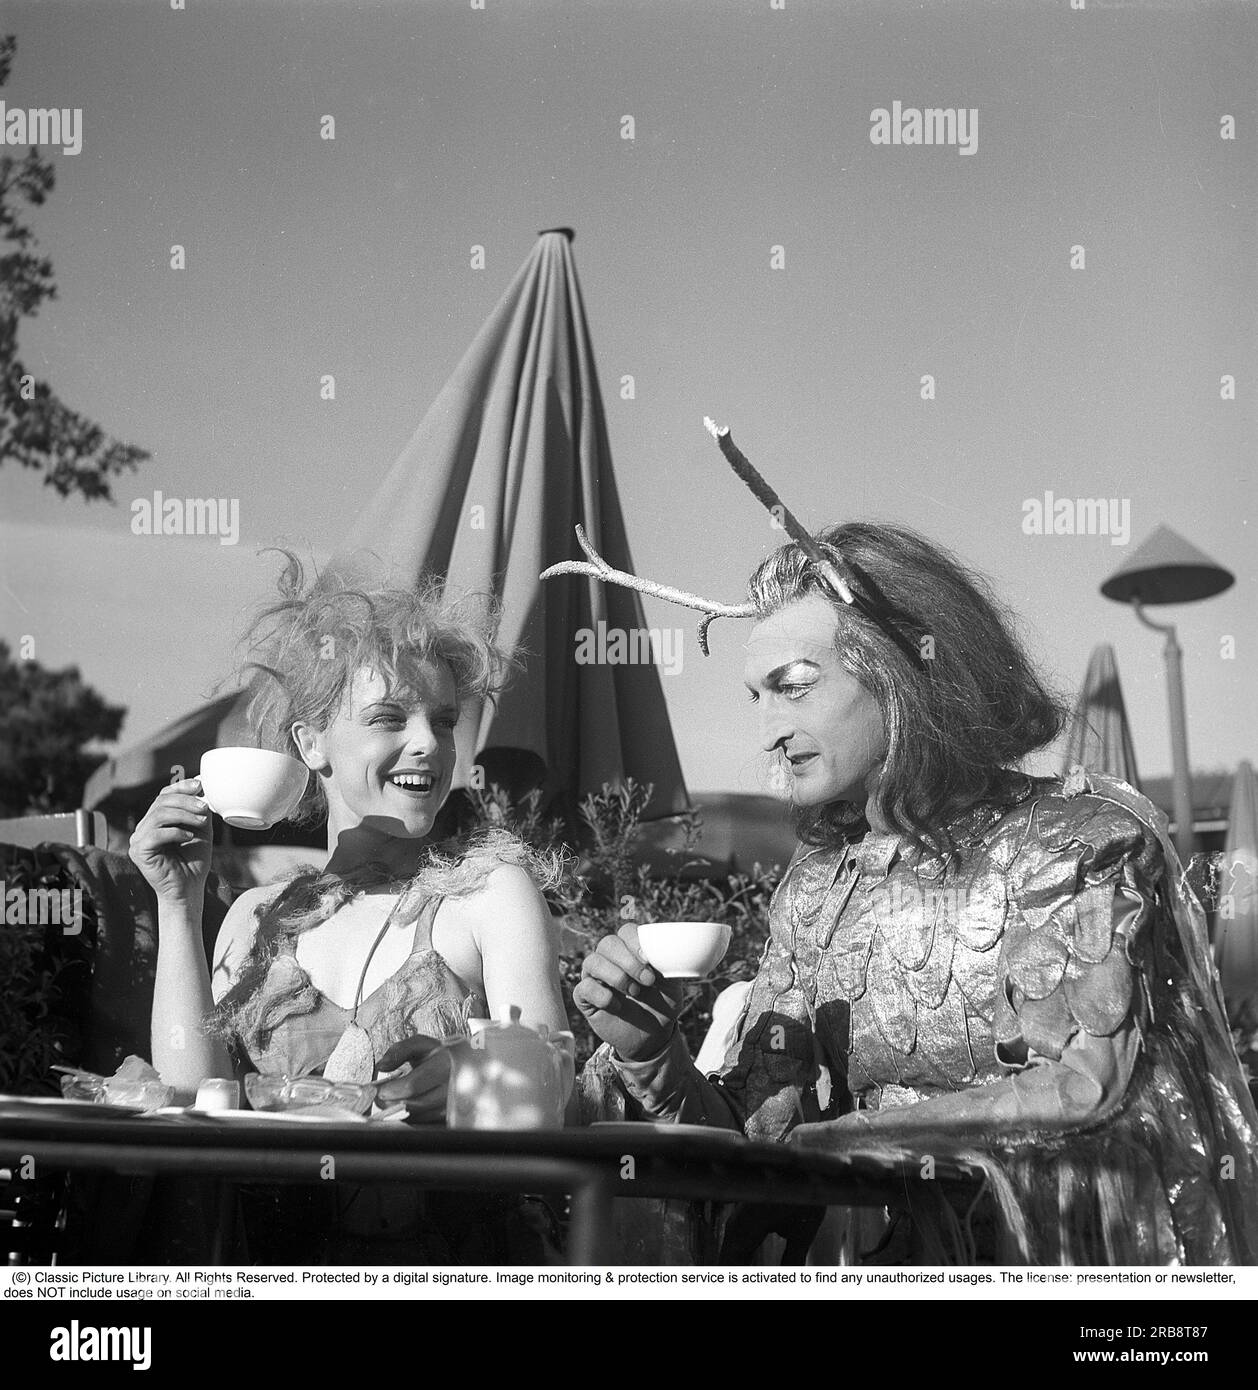 A cargo de Cecile Ossbahr. Nacido el 14 de octubre de 1920, muerto el 27 de diciembre de 2012. Actor sueco. Aquí en el papel de Titania, la reina de las hadas en la actuación Sueño de Una noche de verano en el teatro al aire libre de Skansen en 1946. El teatro fue dirigido durante algunos años por Loren Marmstedt. Su co-estrella Georg Årlin (1916-1992) interpreta el papel de Oberon. Se les muestra en su ropa de escenario tomando una taza de café. Suecia 1946. Kristoffersson ref U45-6 Foto de stock